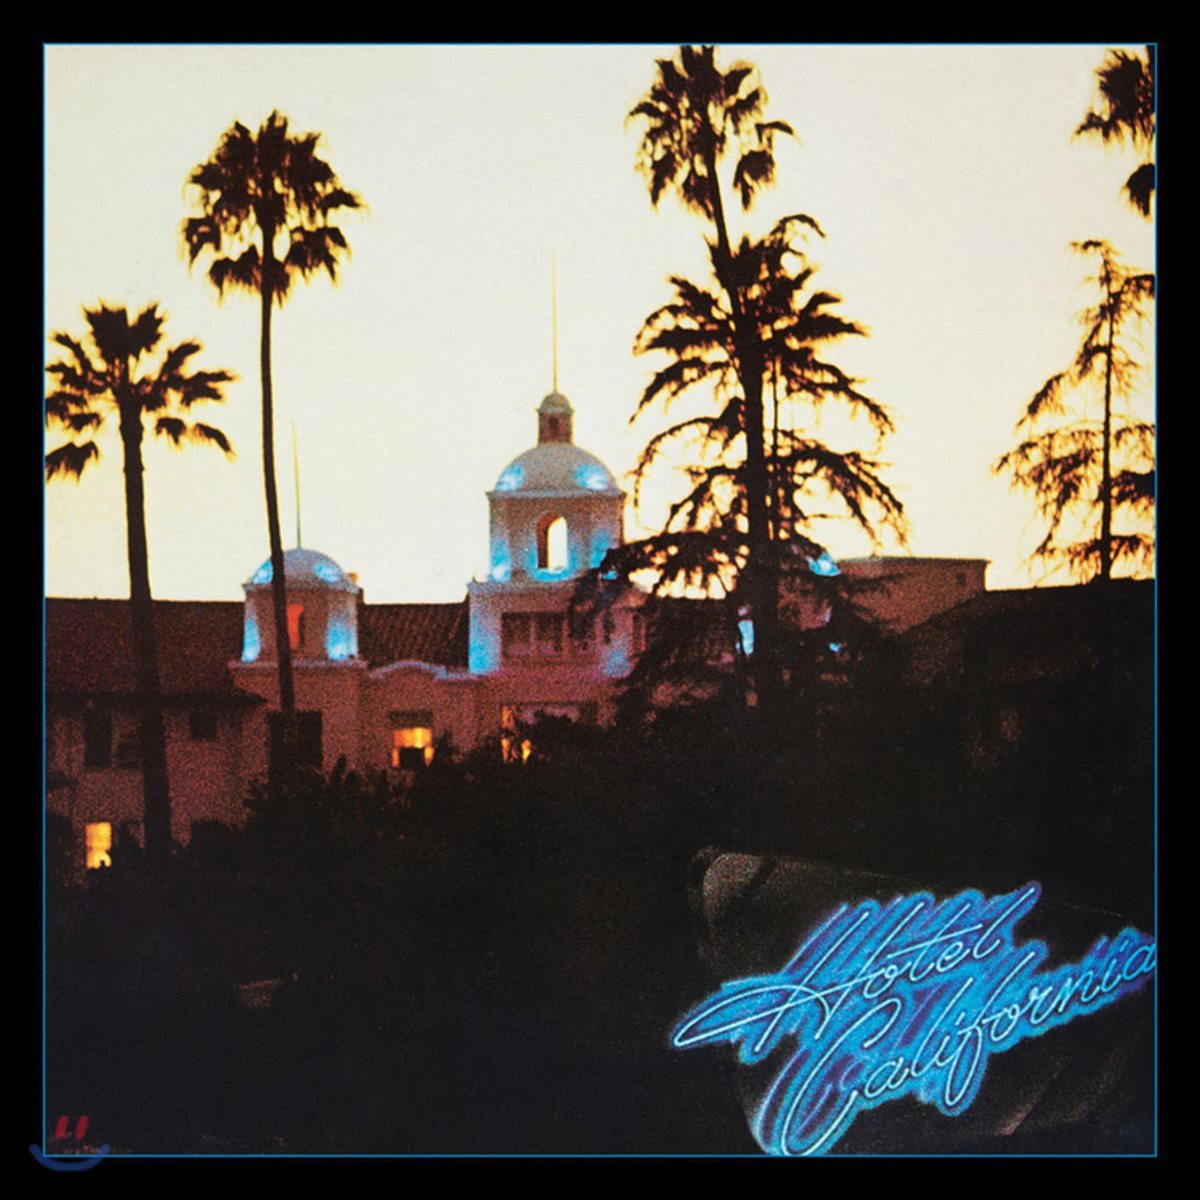 Eagles - Hotel California 이글스 호텔 캘리포니아 발매 40주년 기념 앨범